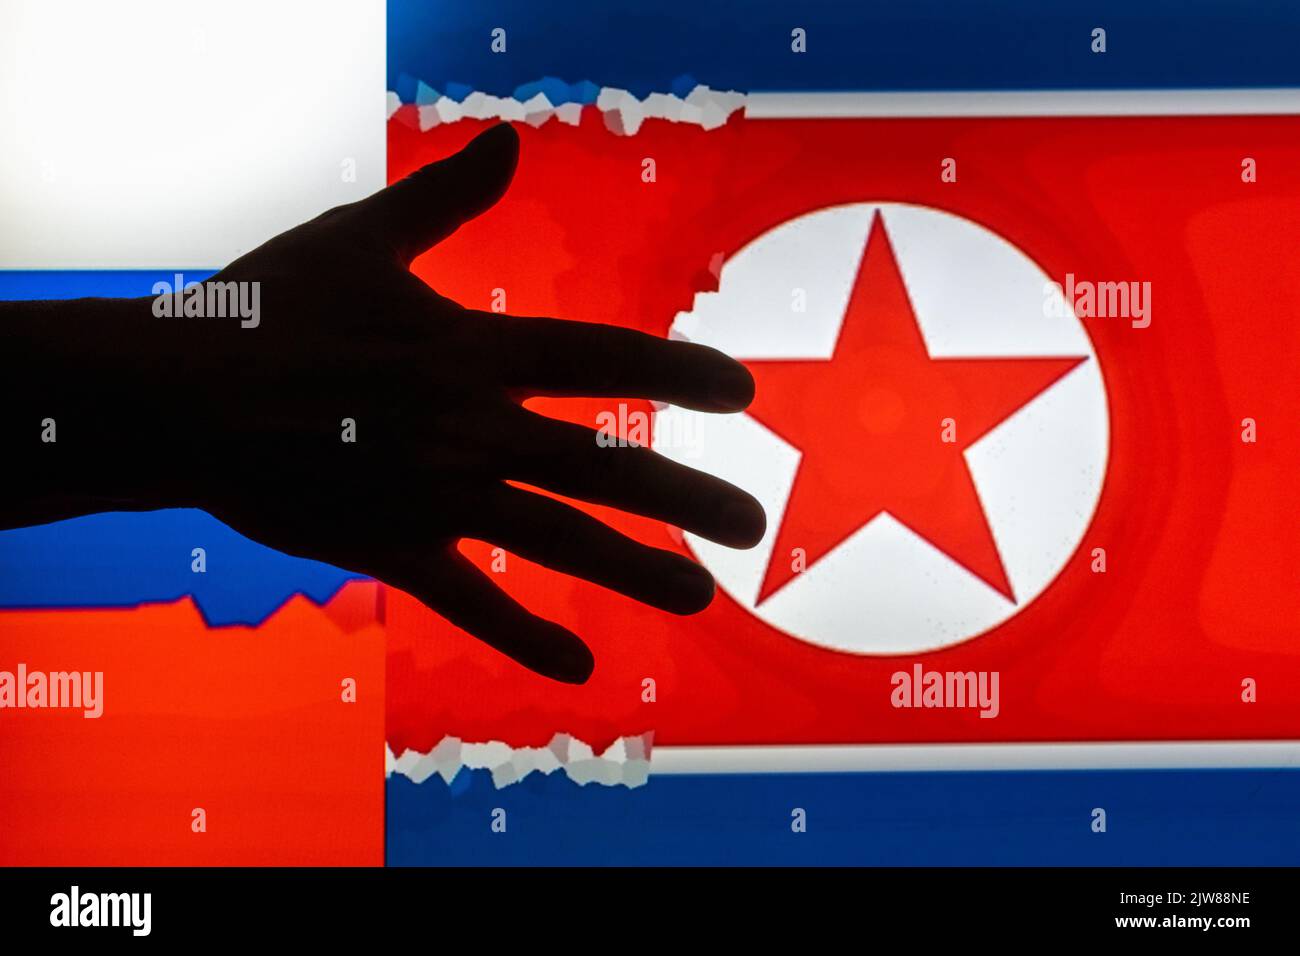 Dunkle Silhouette ausgestreckter Hand auf unscharfem digitalen Bildhintergrund von Flaggen der Russischen Föderation und Nordkoreas Stockfoto